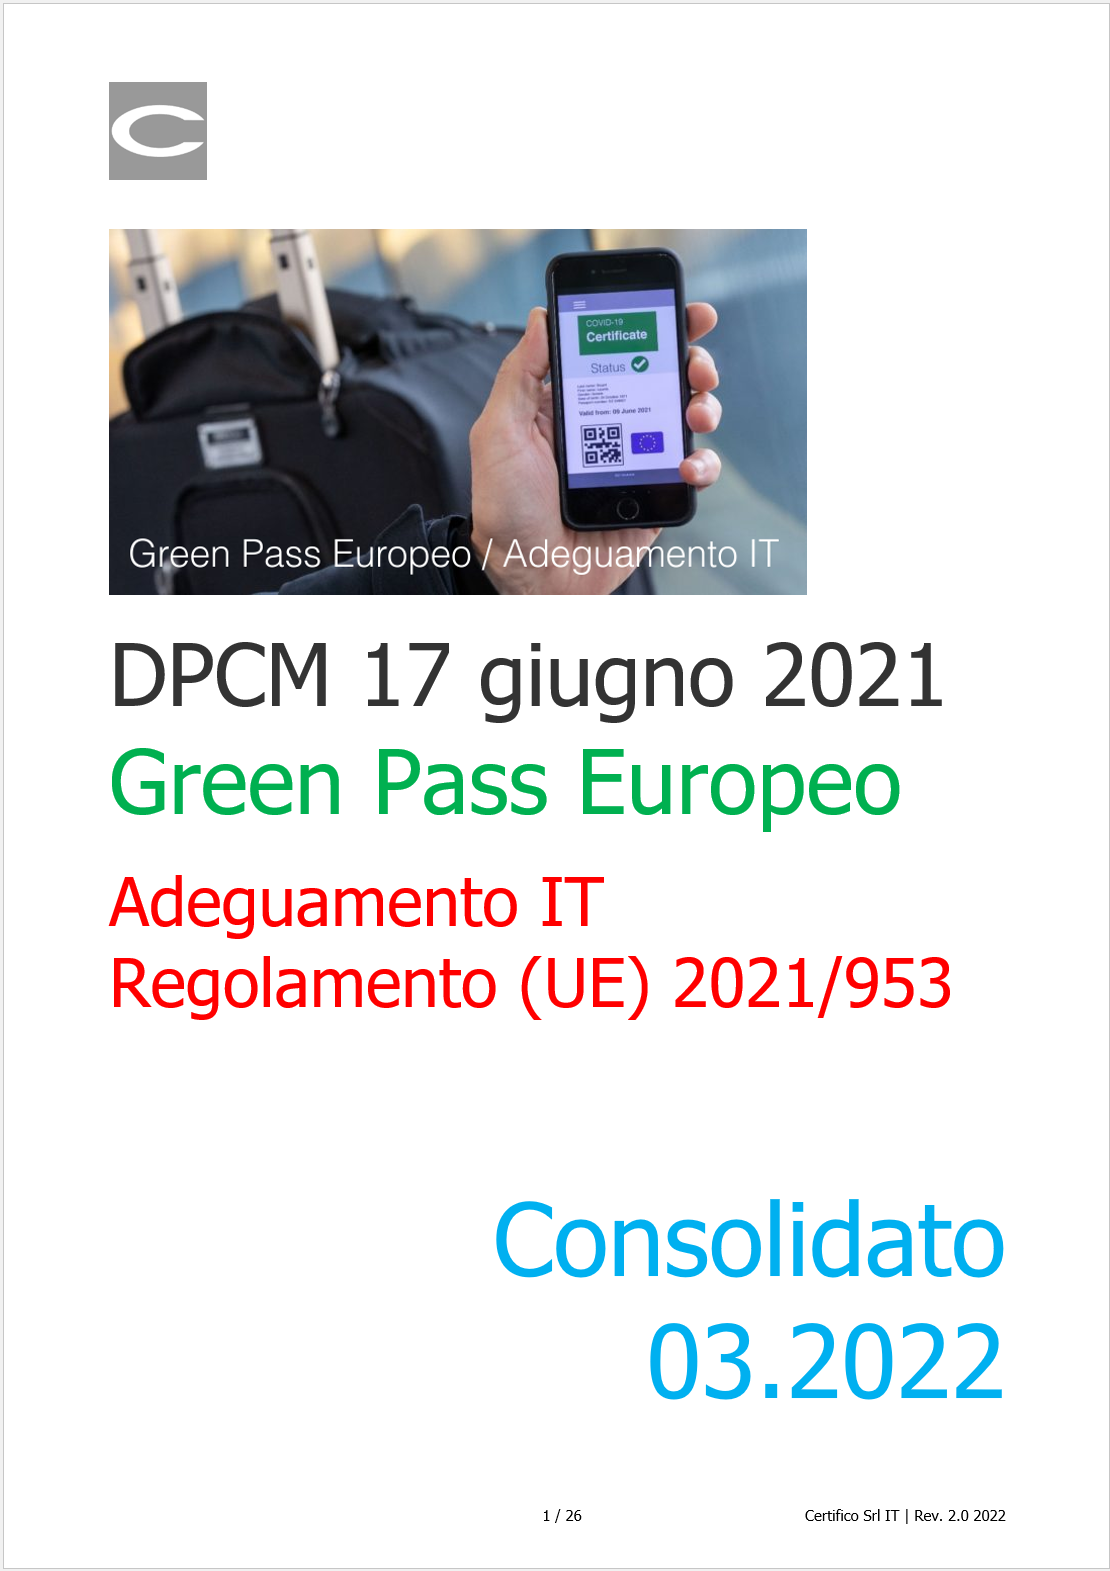 DPCM 17 Giugno 2021 Consolidato Settembre 2021